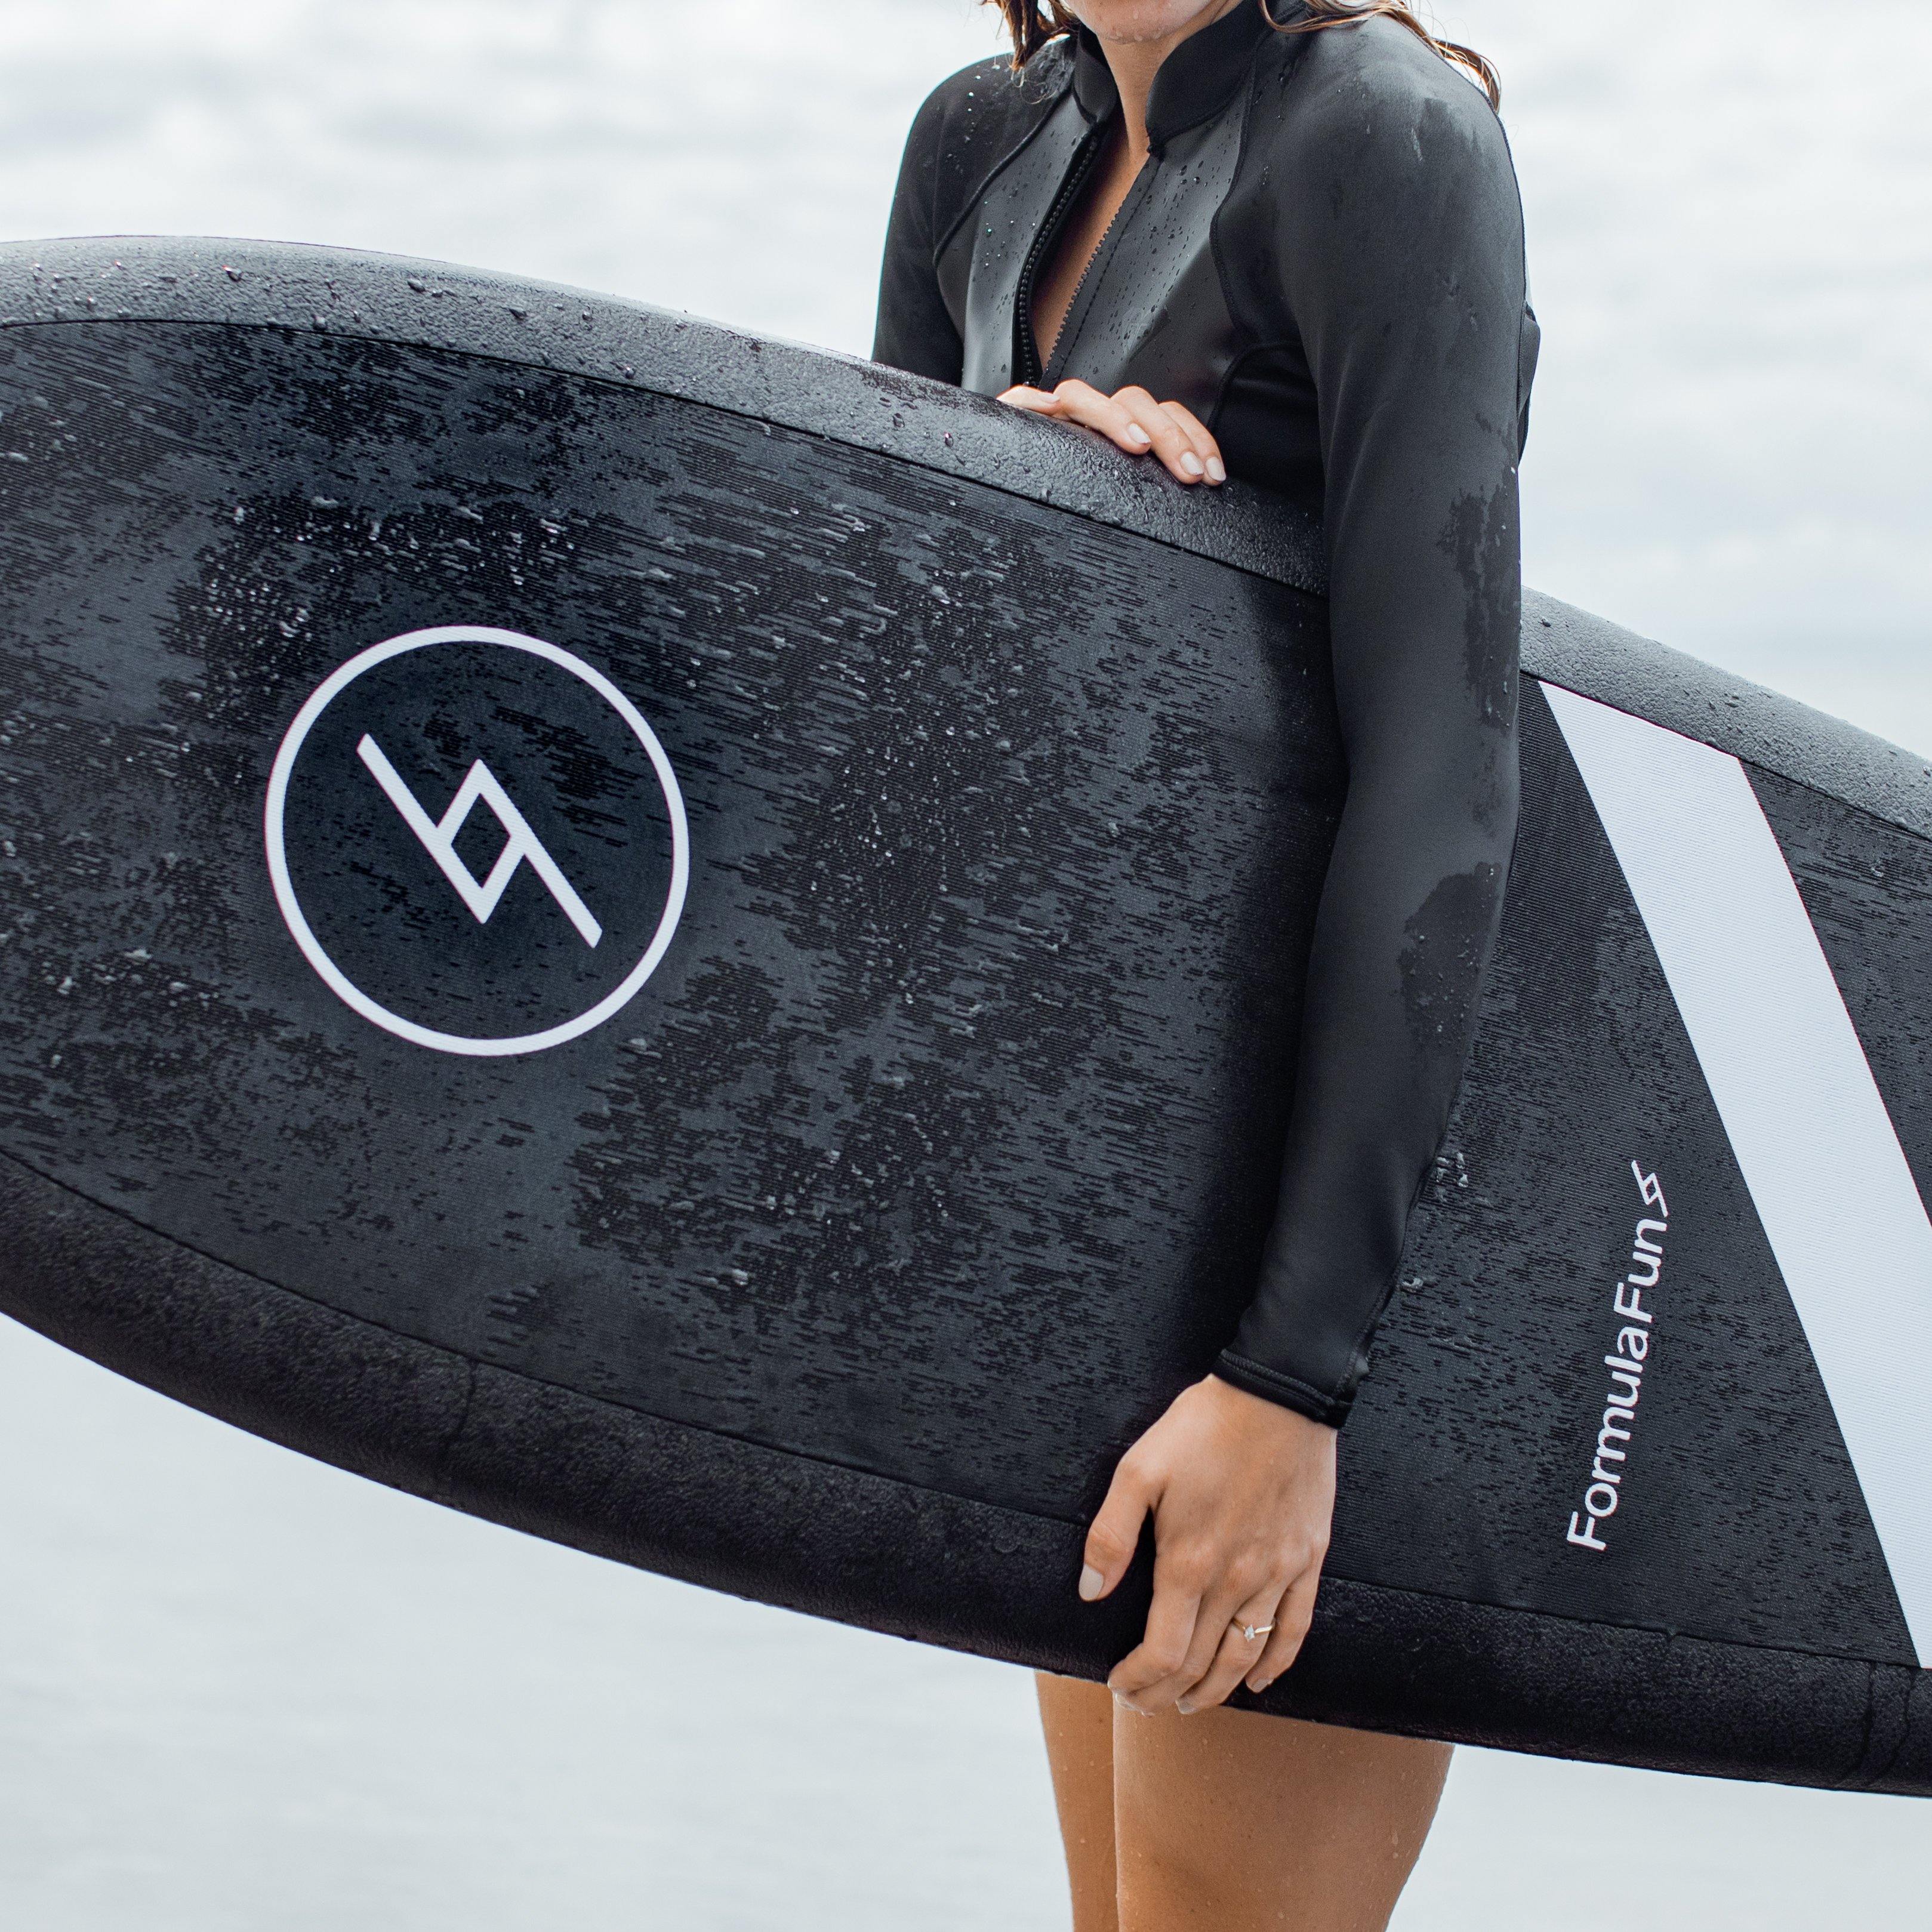 A girl at a beach holding 5 foot 3 inch Formula Fun Foamies Twinnie surfboard